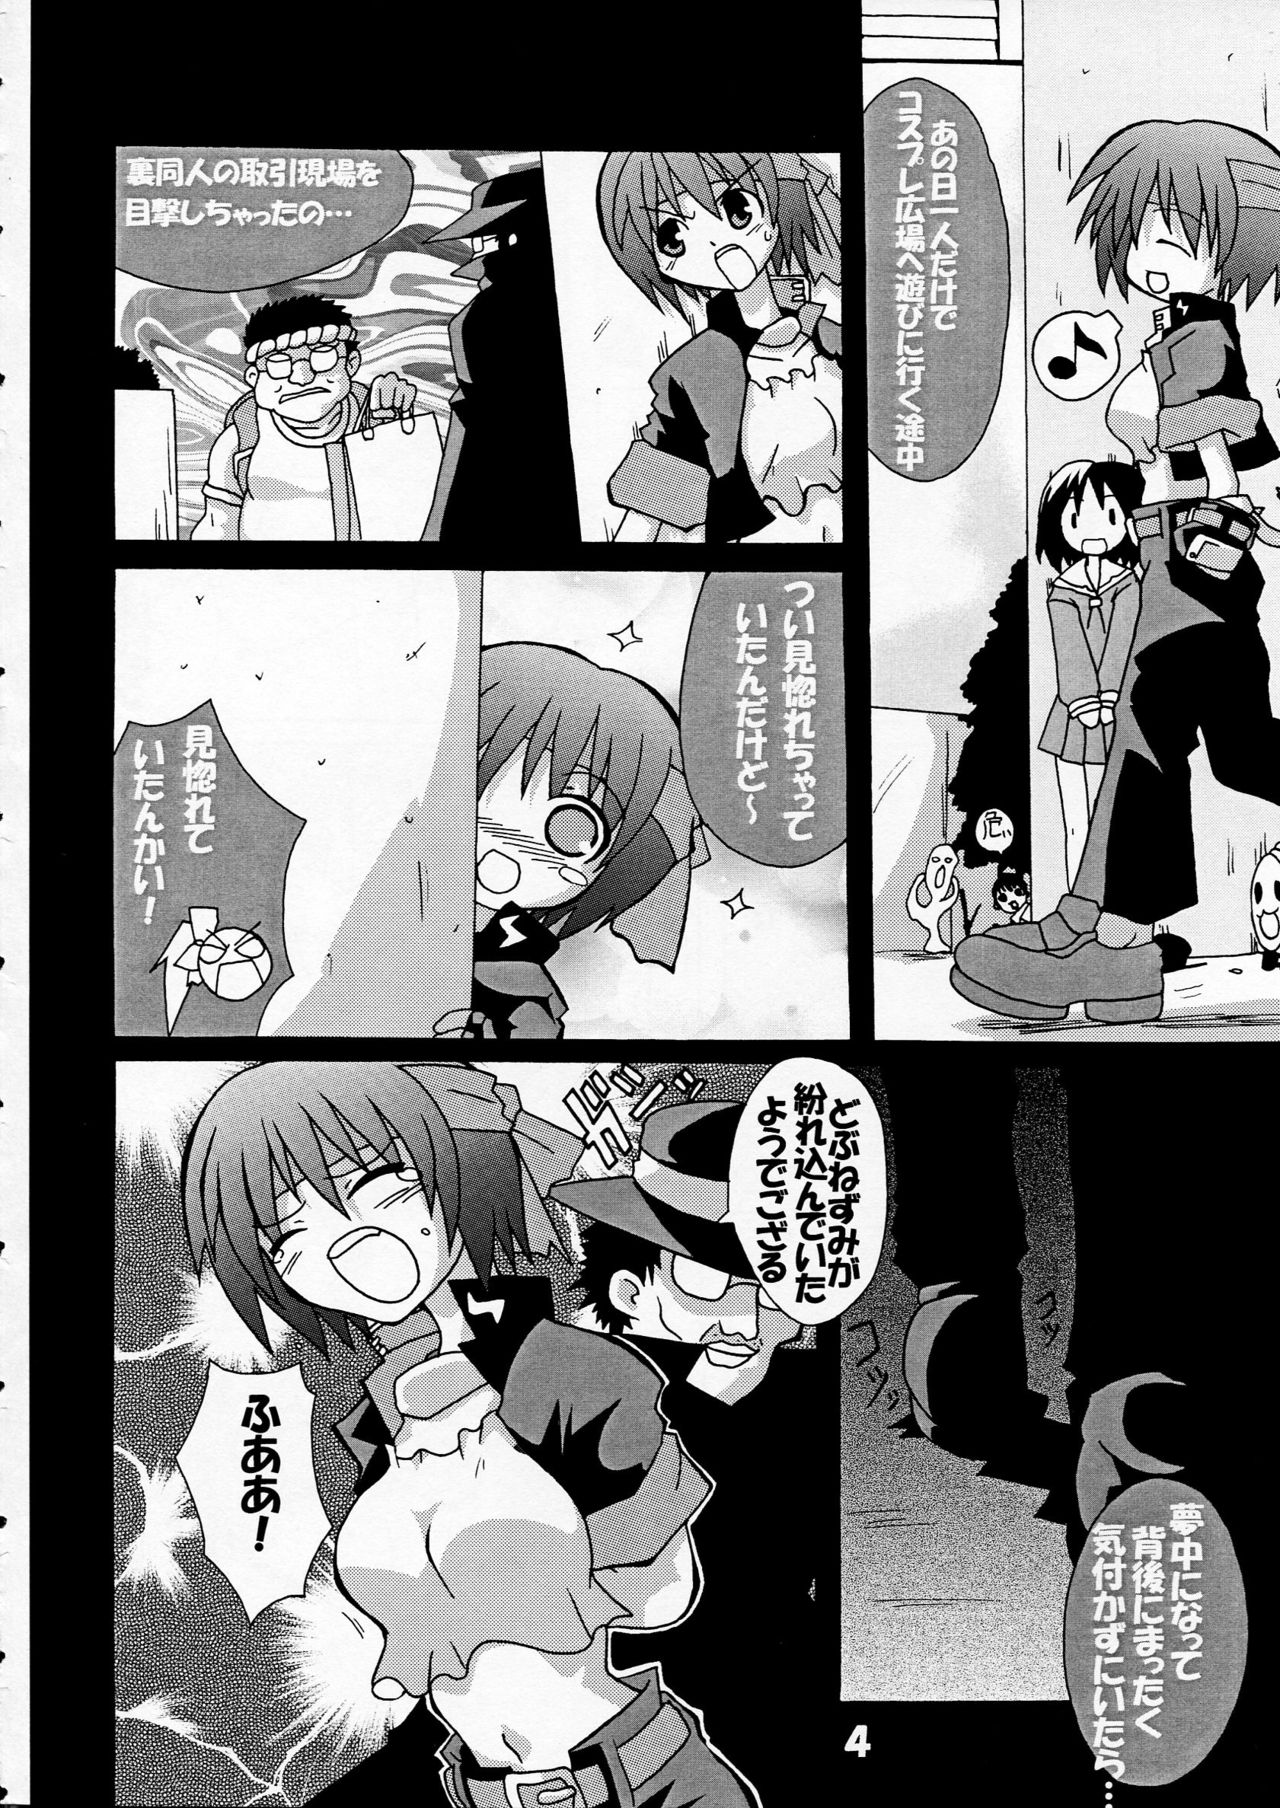 [S-FORCE (Serebi Ryousangata)] Haga Rei de Ikou! Vol. 3 (Comic Party) [S-FORCE (セレビィ量産型)] 芳賀玲で逝こう! VOL.3 (こみっくパーティー)